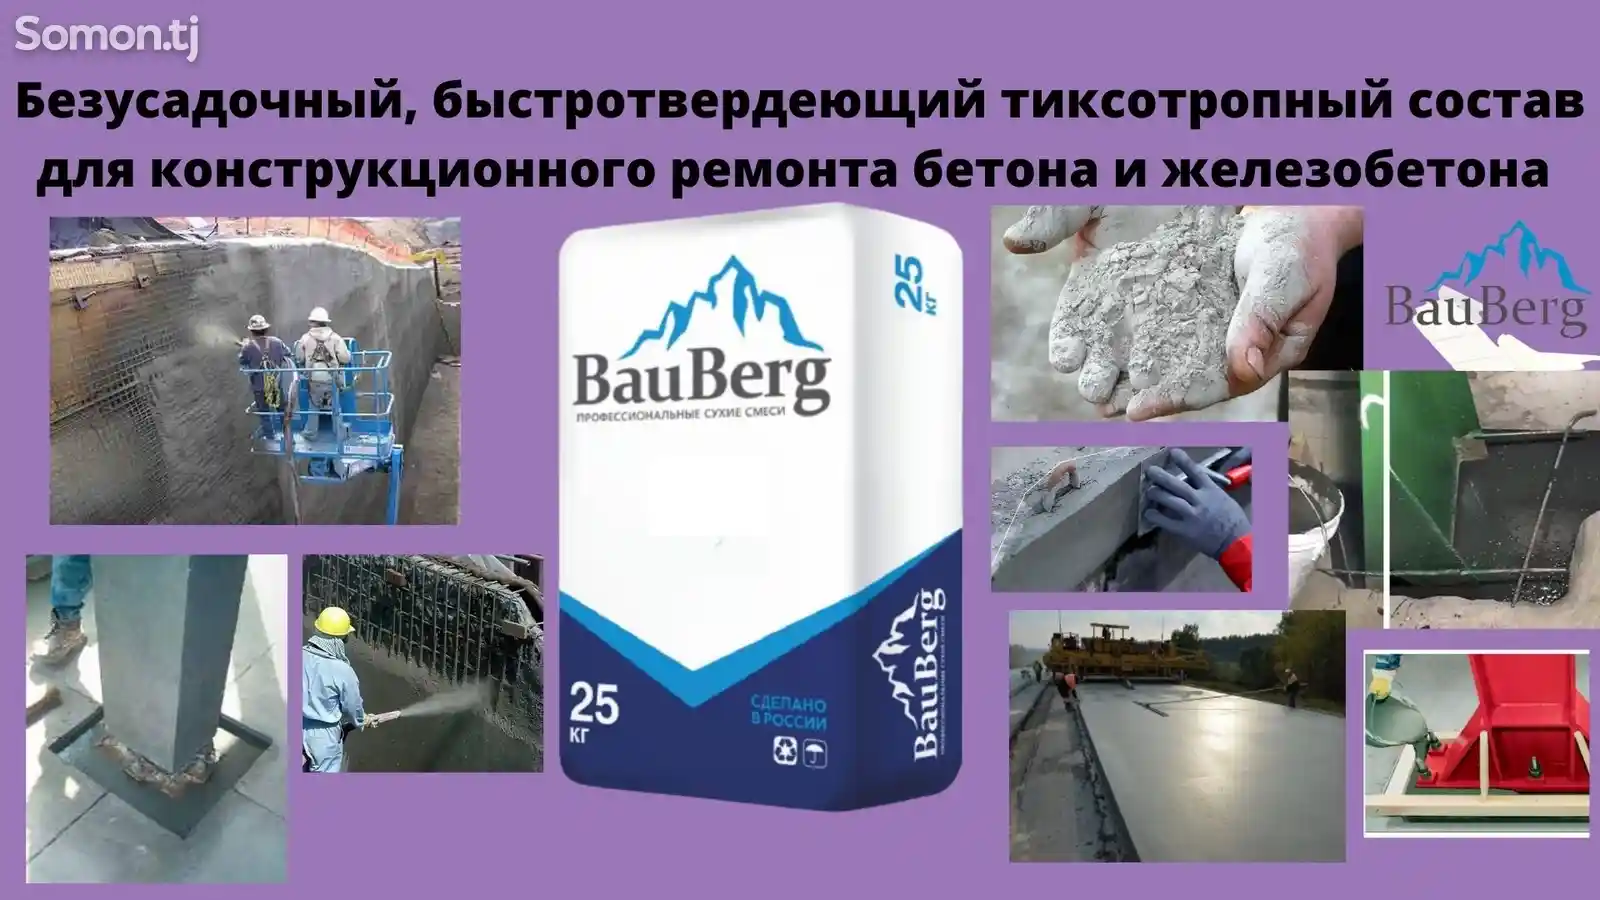 Ремонтная безусадочная литьевая тиксотропная смесь для бетона Bauberg-4